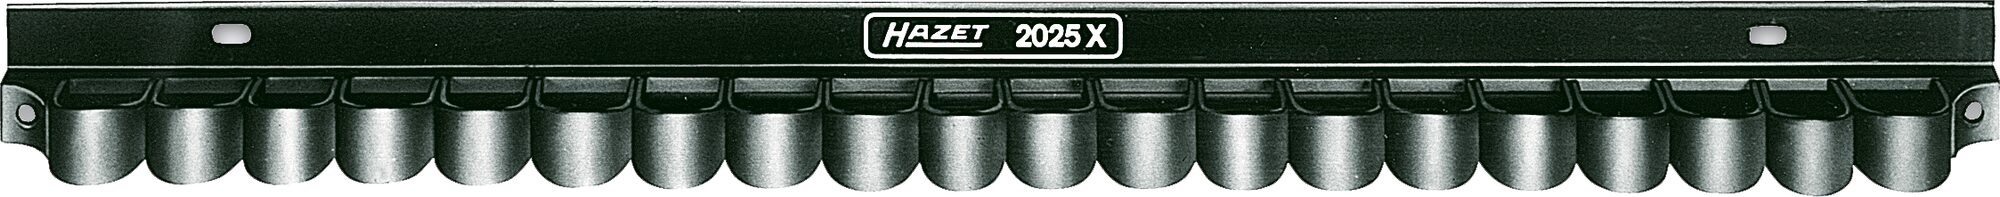 HAZET Werkzeug Halter 2025X